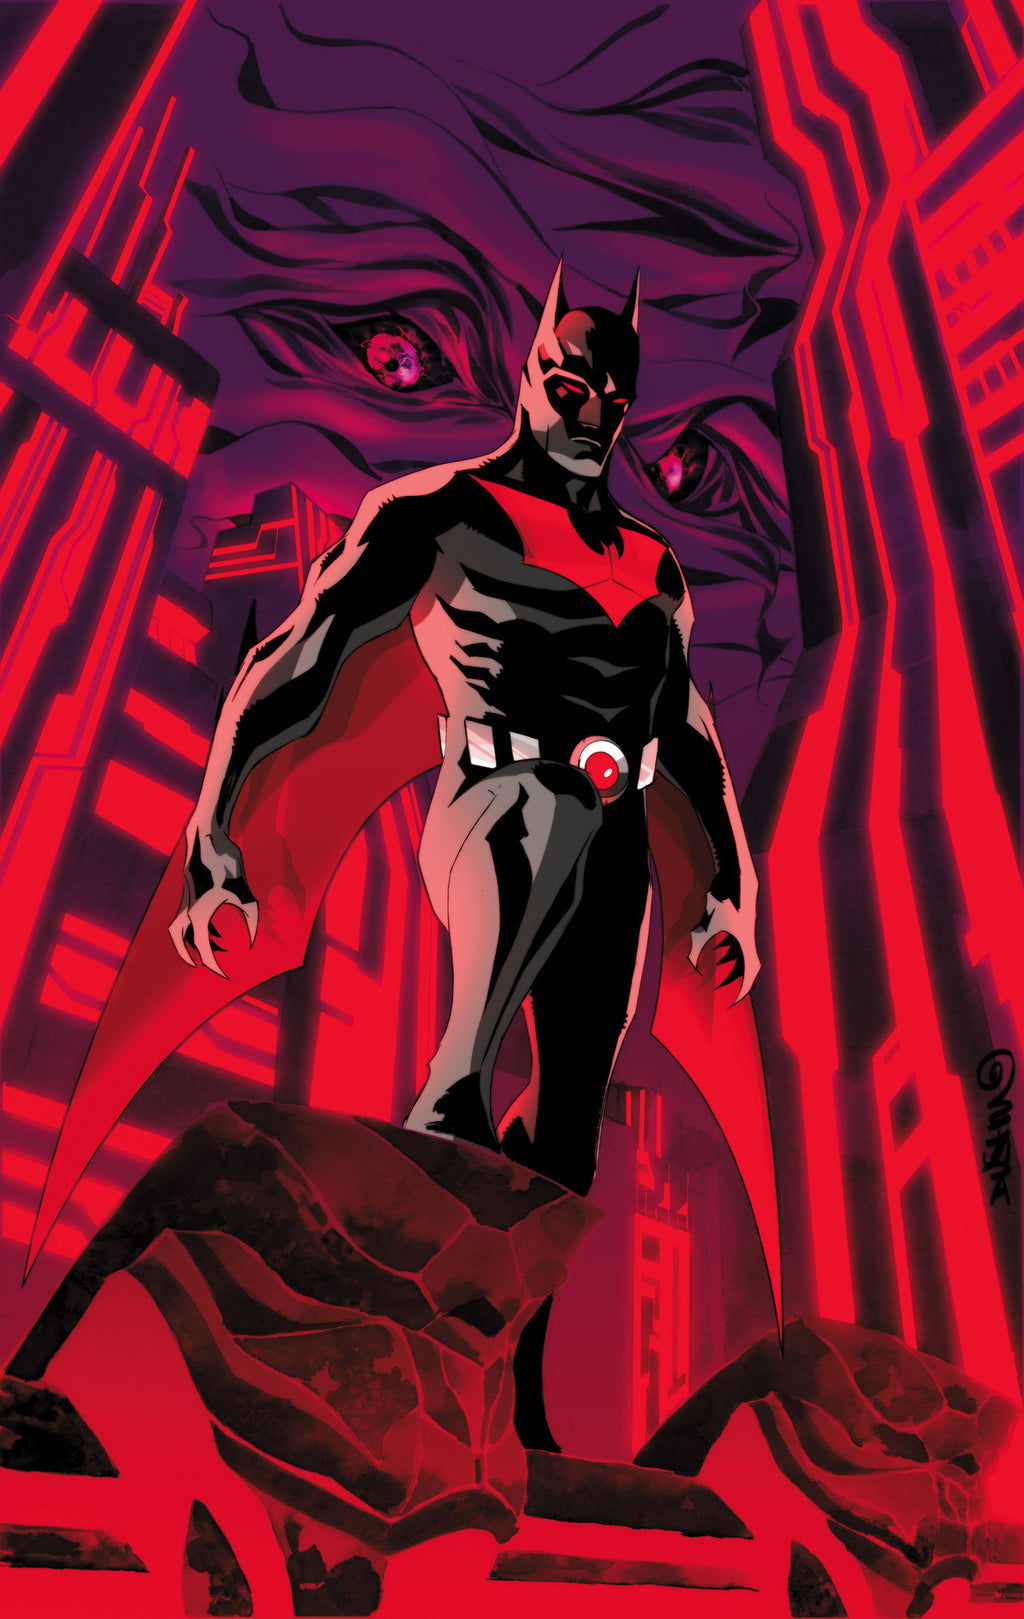 Tactical Batsuit, DC Comics Extended Universe Wiki